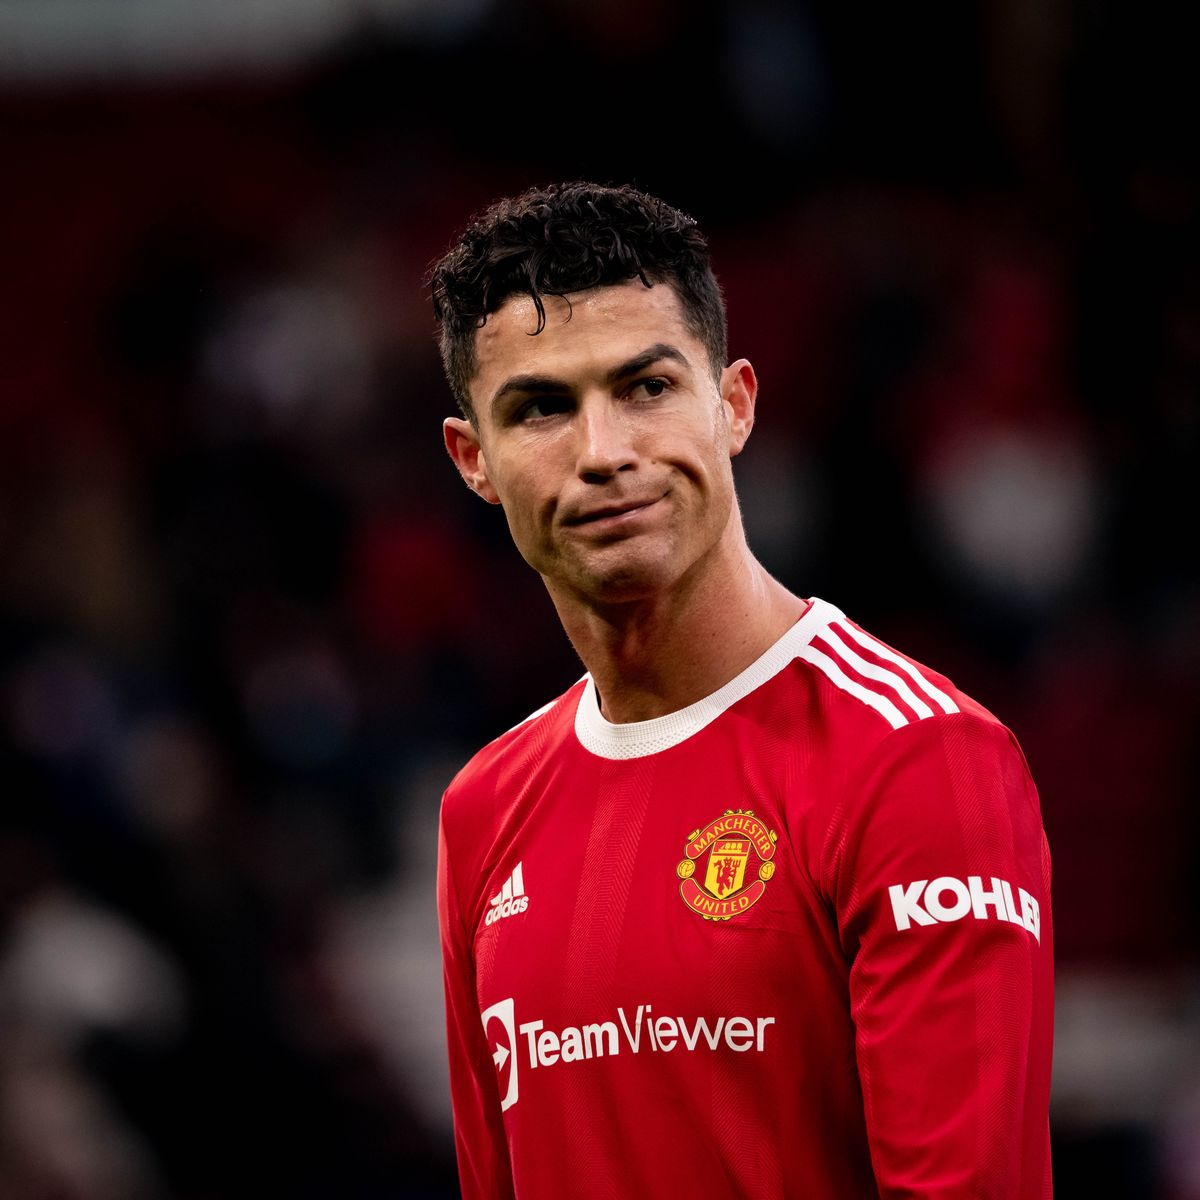 Quel numéro de maillot Cristiano Ronaldo a-t-il exceptionnellement porté, lors de la saison 2021-2022 à Manchester United ? 